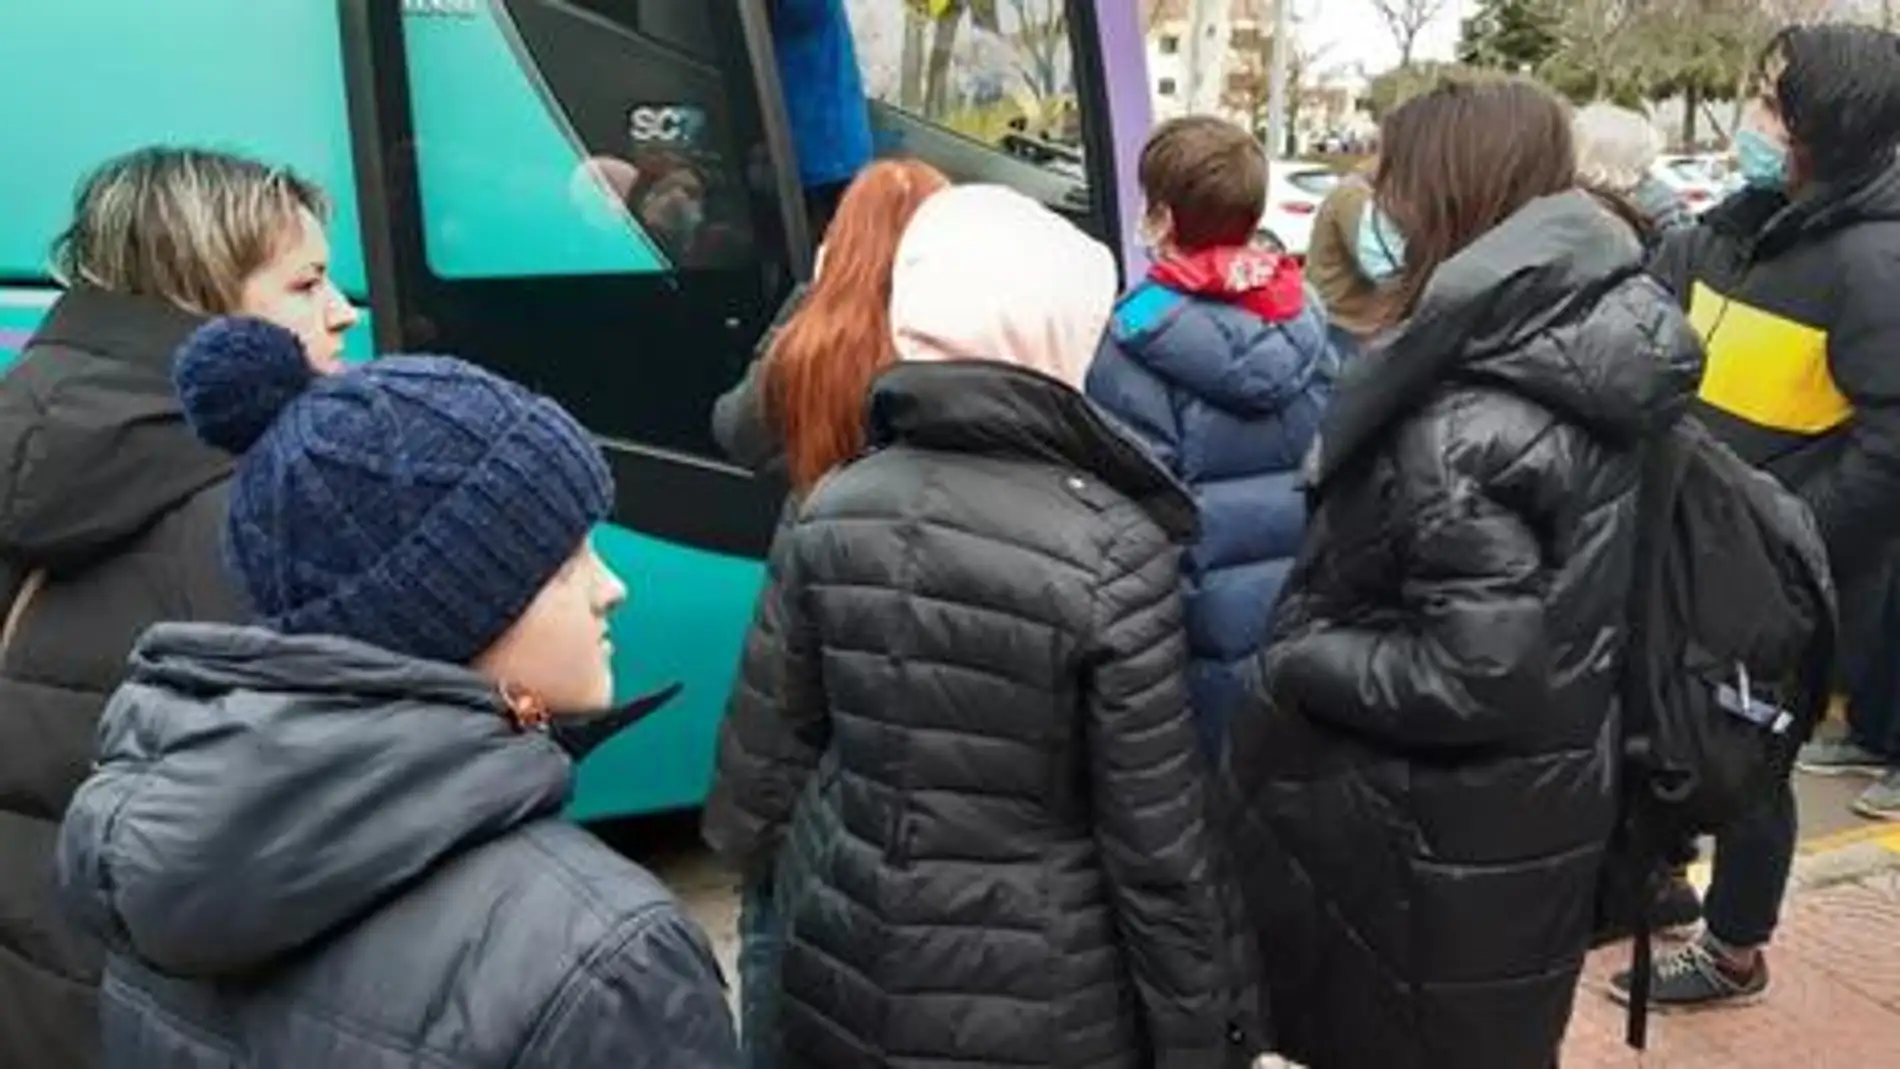 Refugiados ucranianos suben a un autobús. 